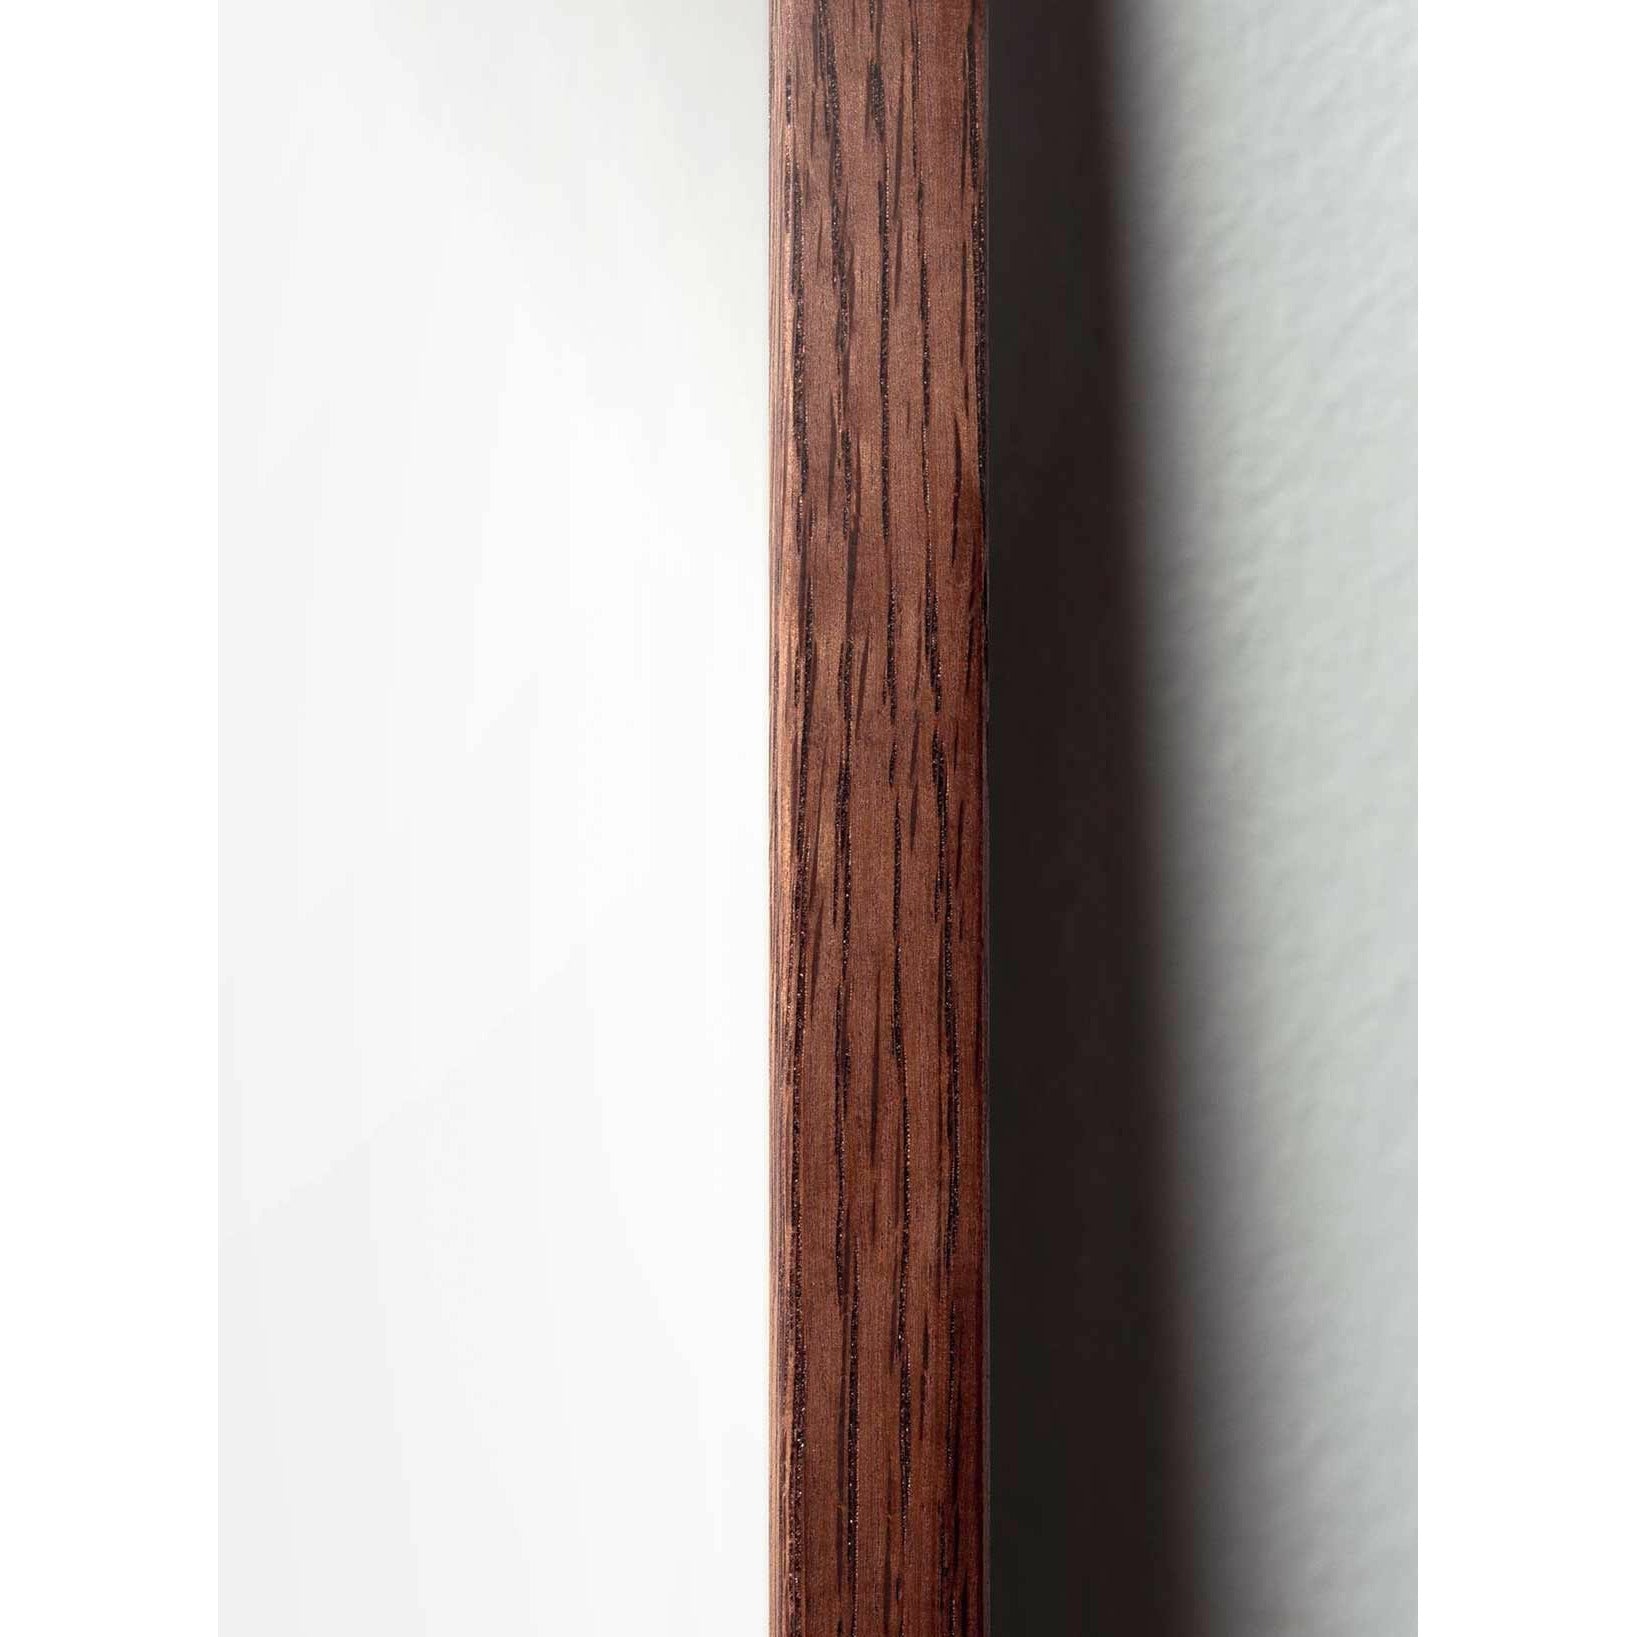 Póster clásico de BrainChild Teddy Bear, marco hecho de madera oscura de 70x100 cm, fondo de color arena